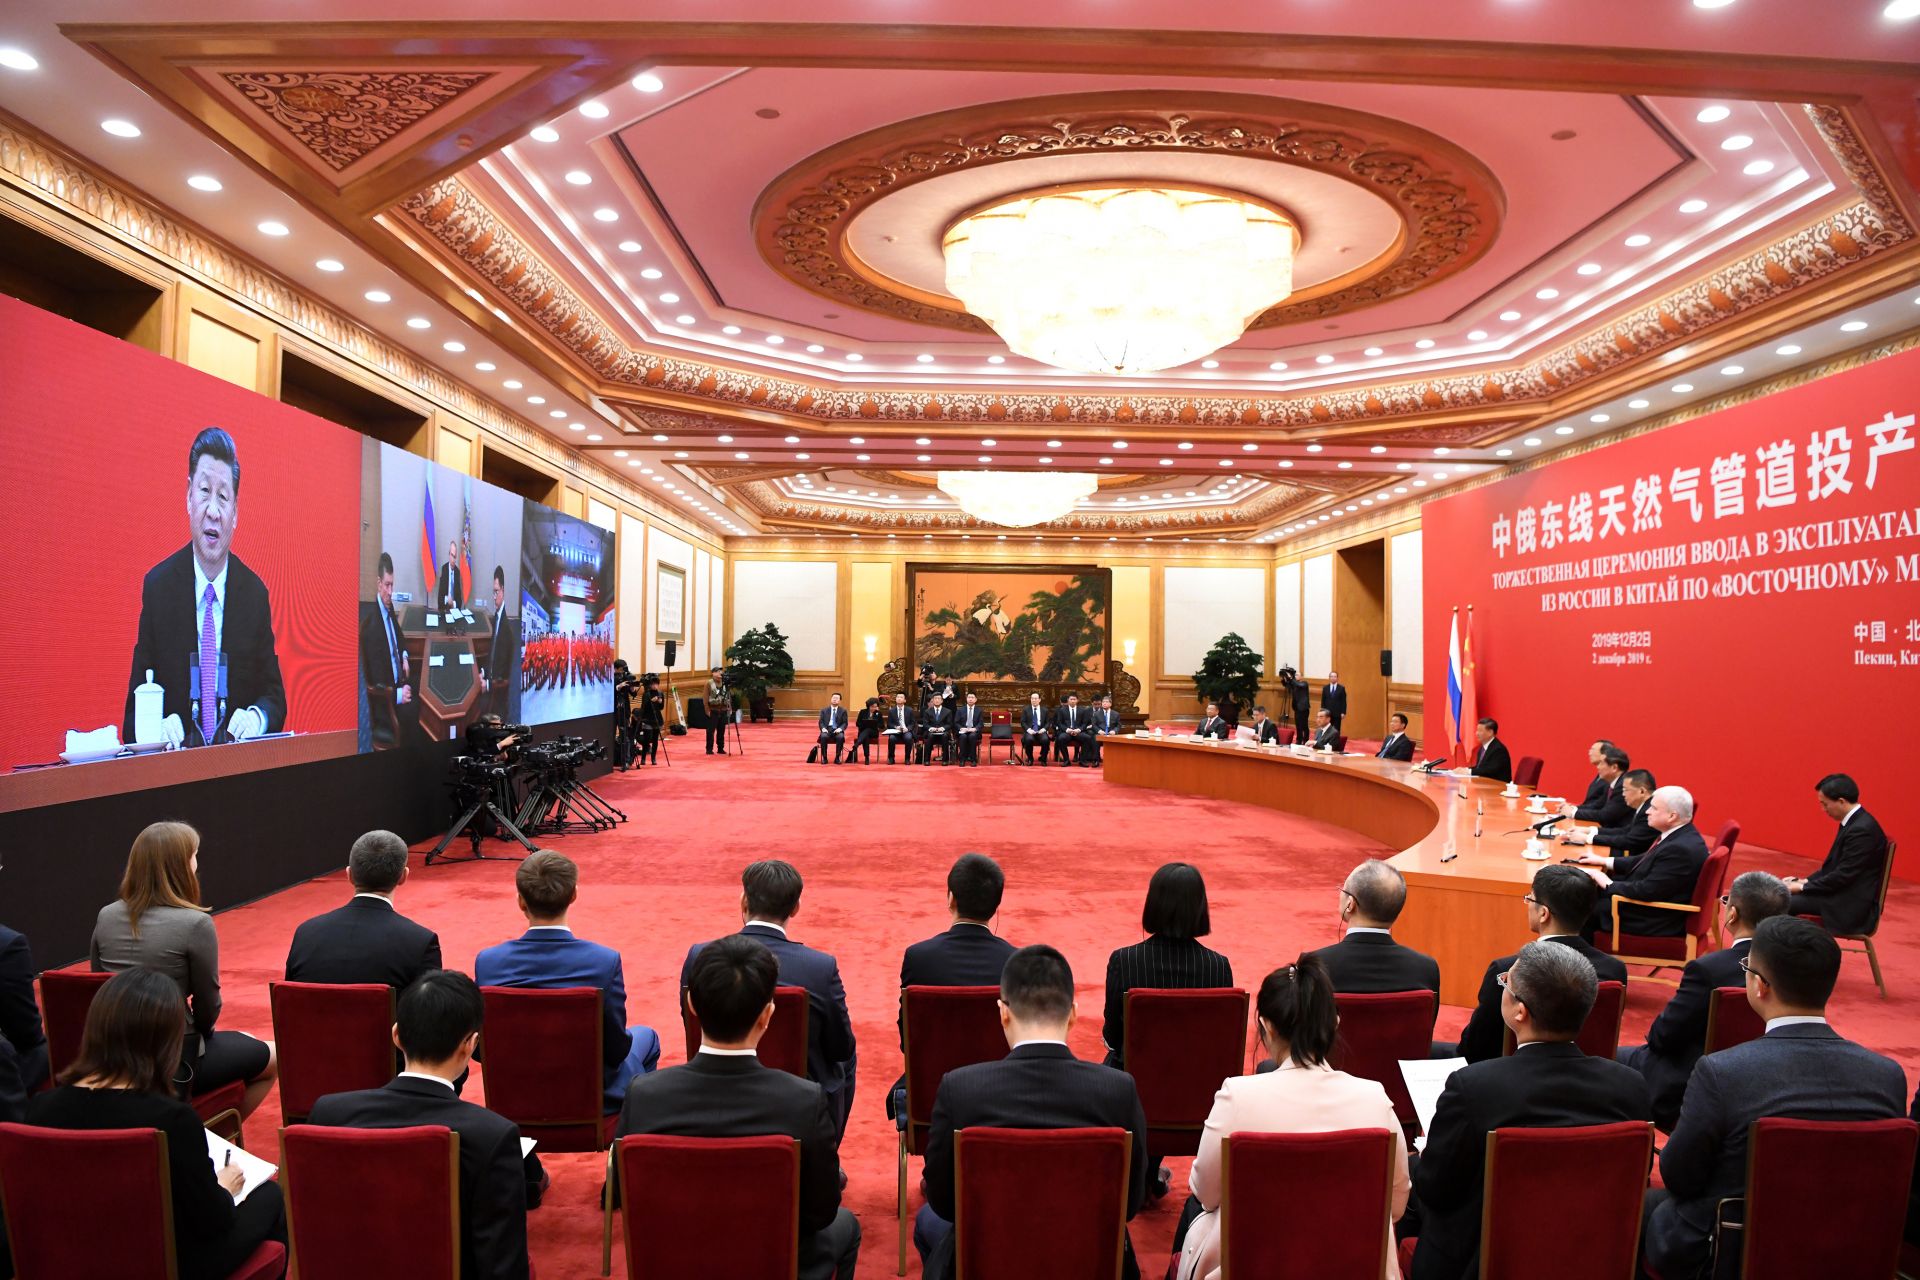  Китайският президент Си Дзинпин и съветският президент Владимир Путин беседват посредством видео връзка, Пекин, 2019 година 